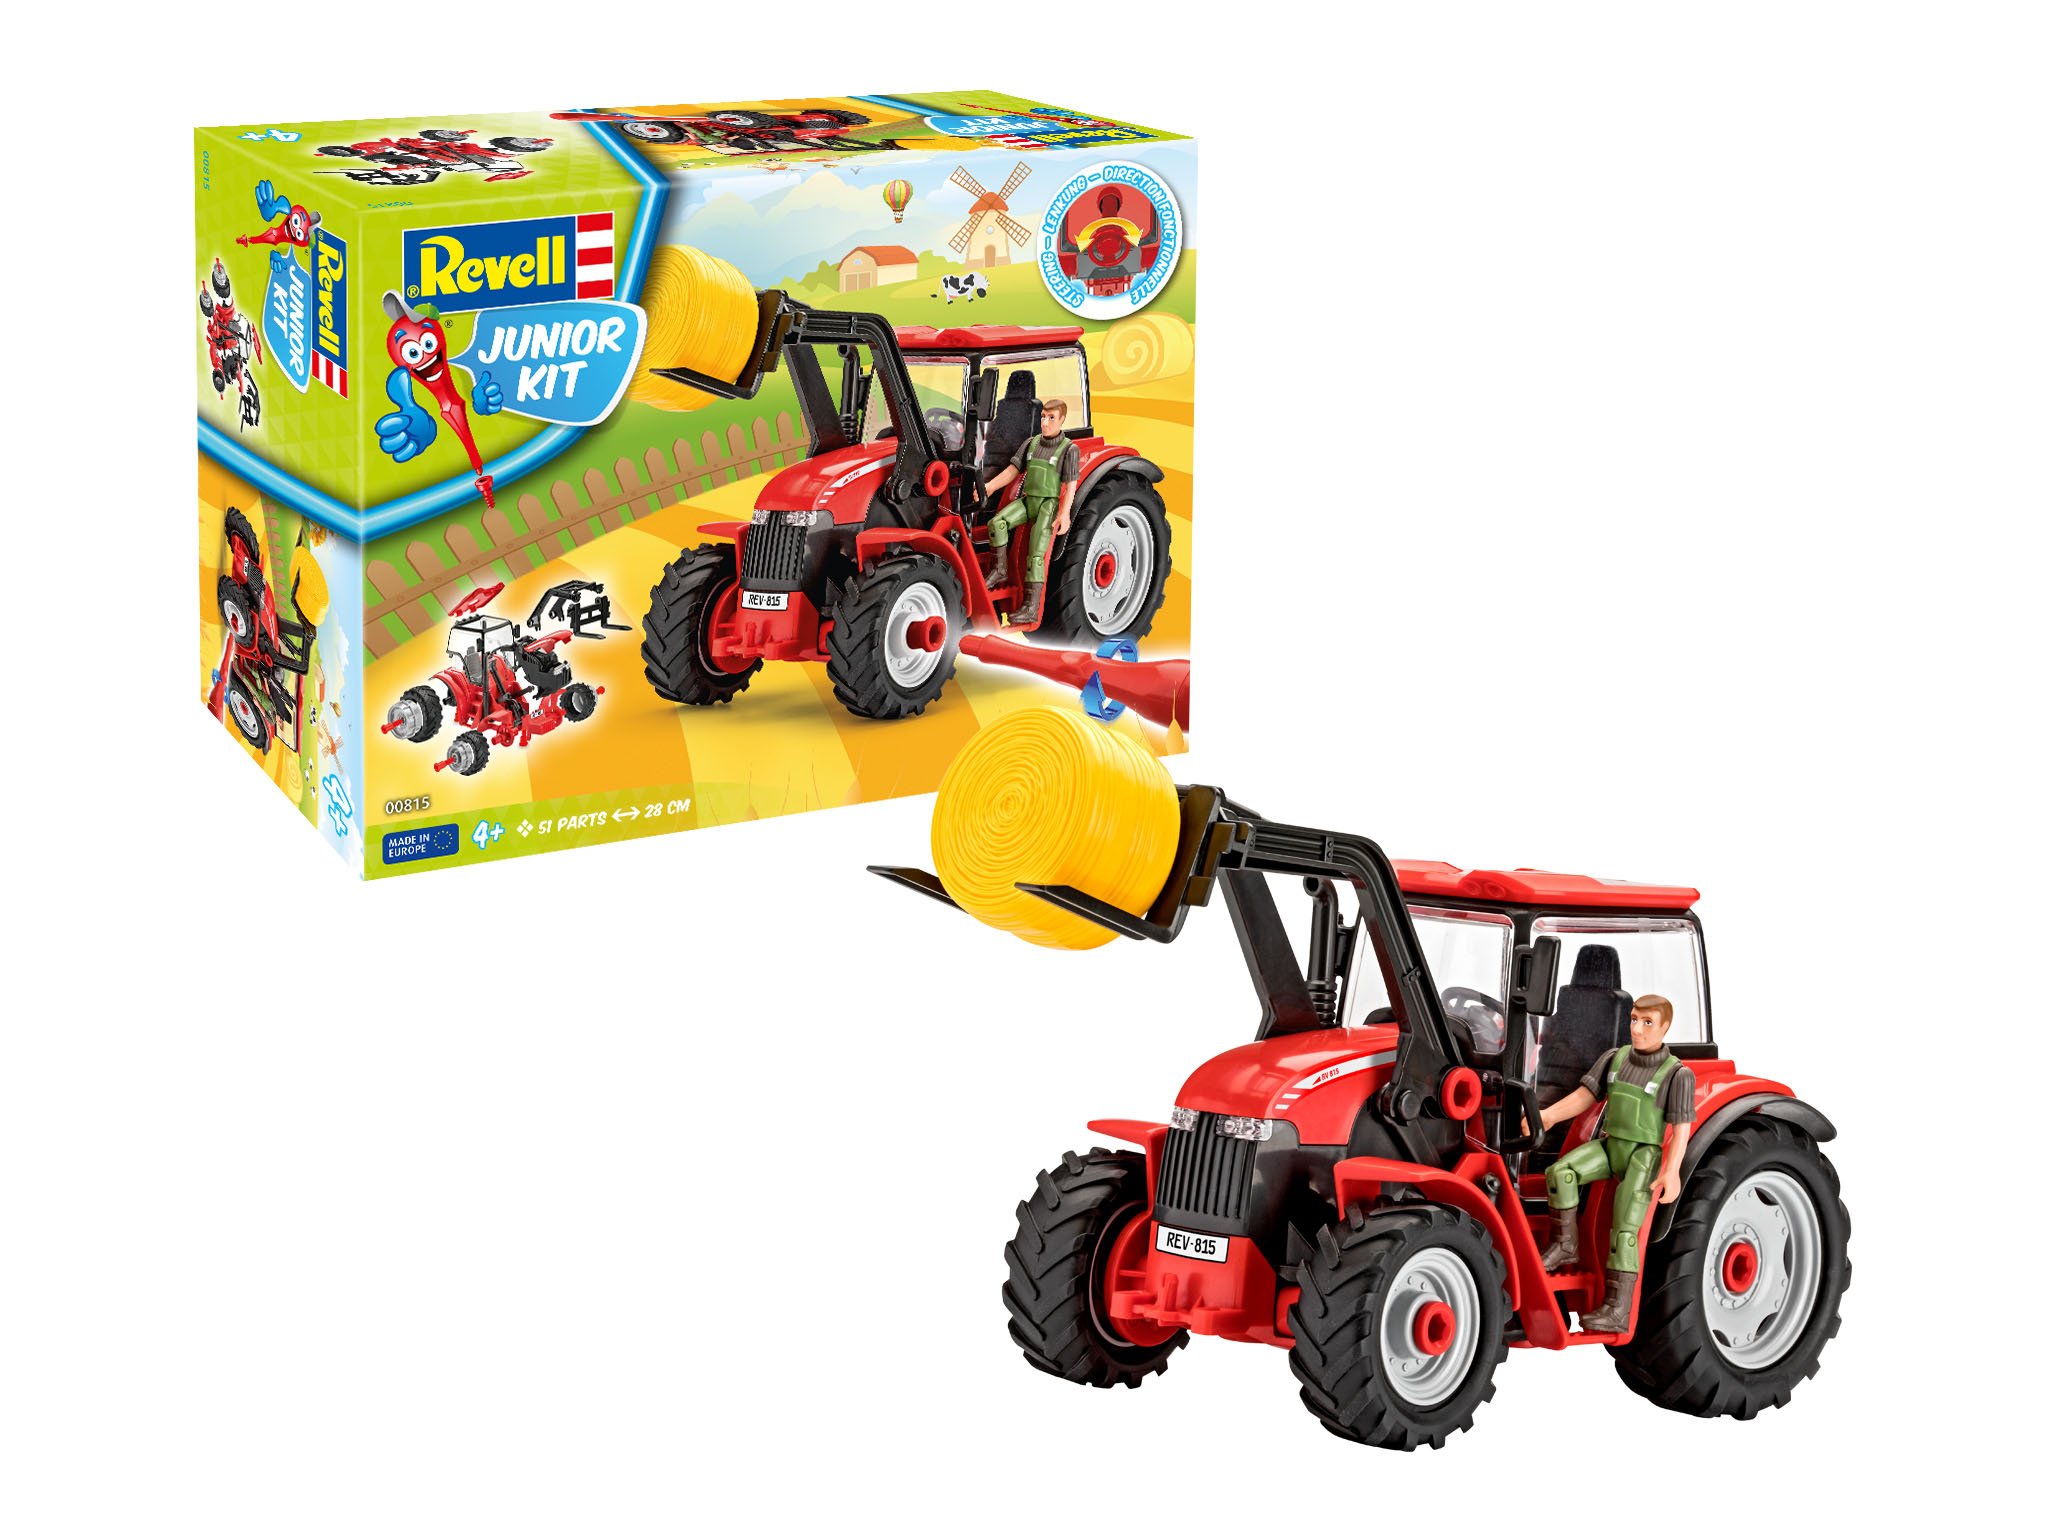 Revell 00815 Junior Kit-Traktor mit Frontlader und Spielfigur 4 der Bausatz mit dem Schraubsystem für Kinder ab 4 Jahre, Bauen-Schrauben-Spielen, mit tollen Funktionen, rot, Länge ca. 28 cm